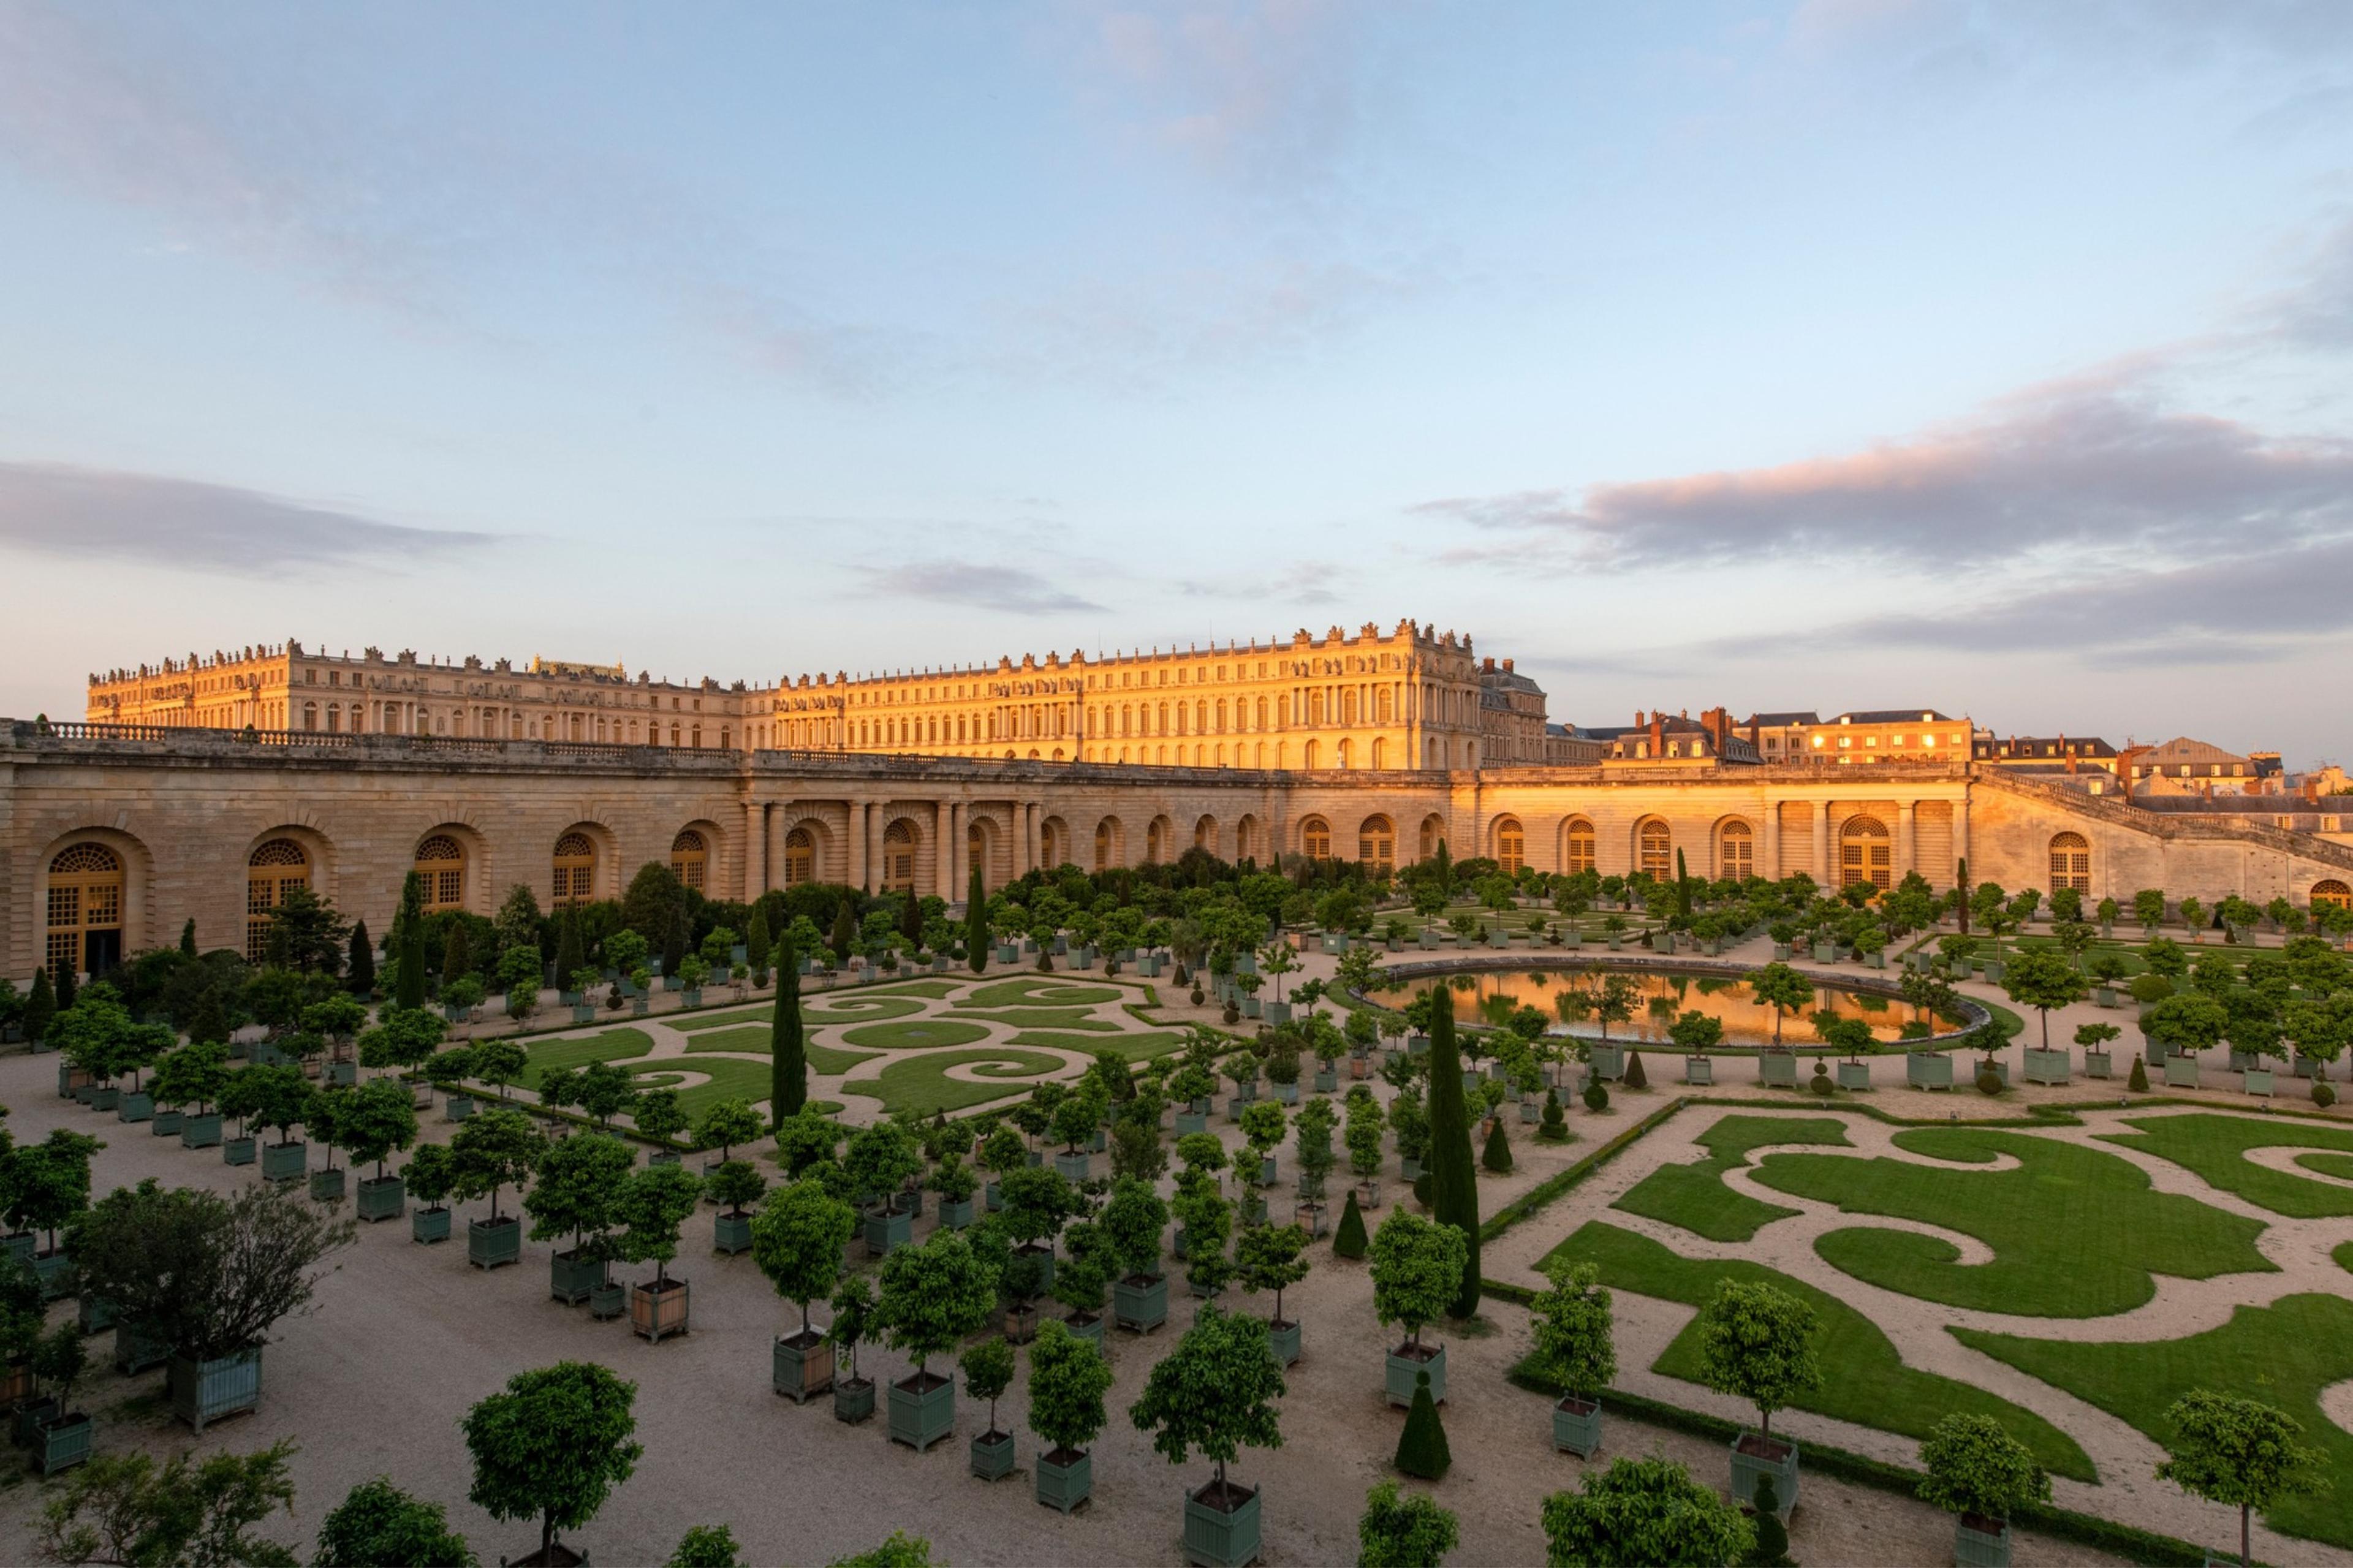 Palace of Versailles (Château de Versailles)